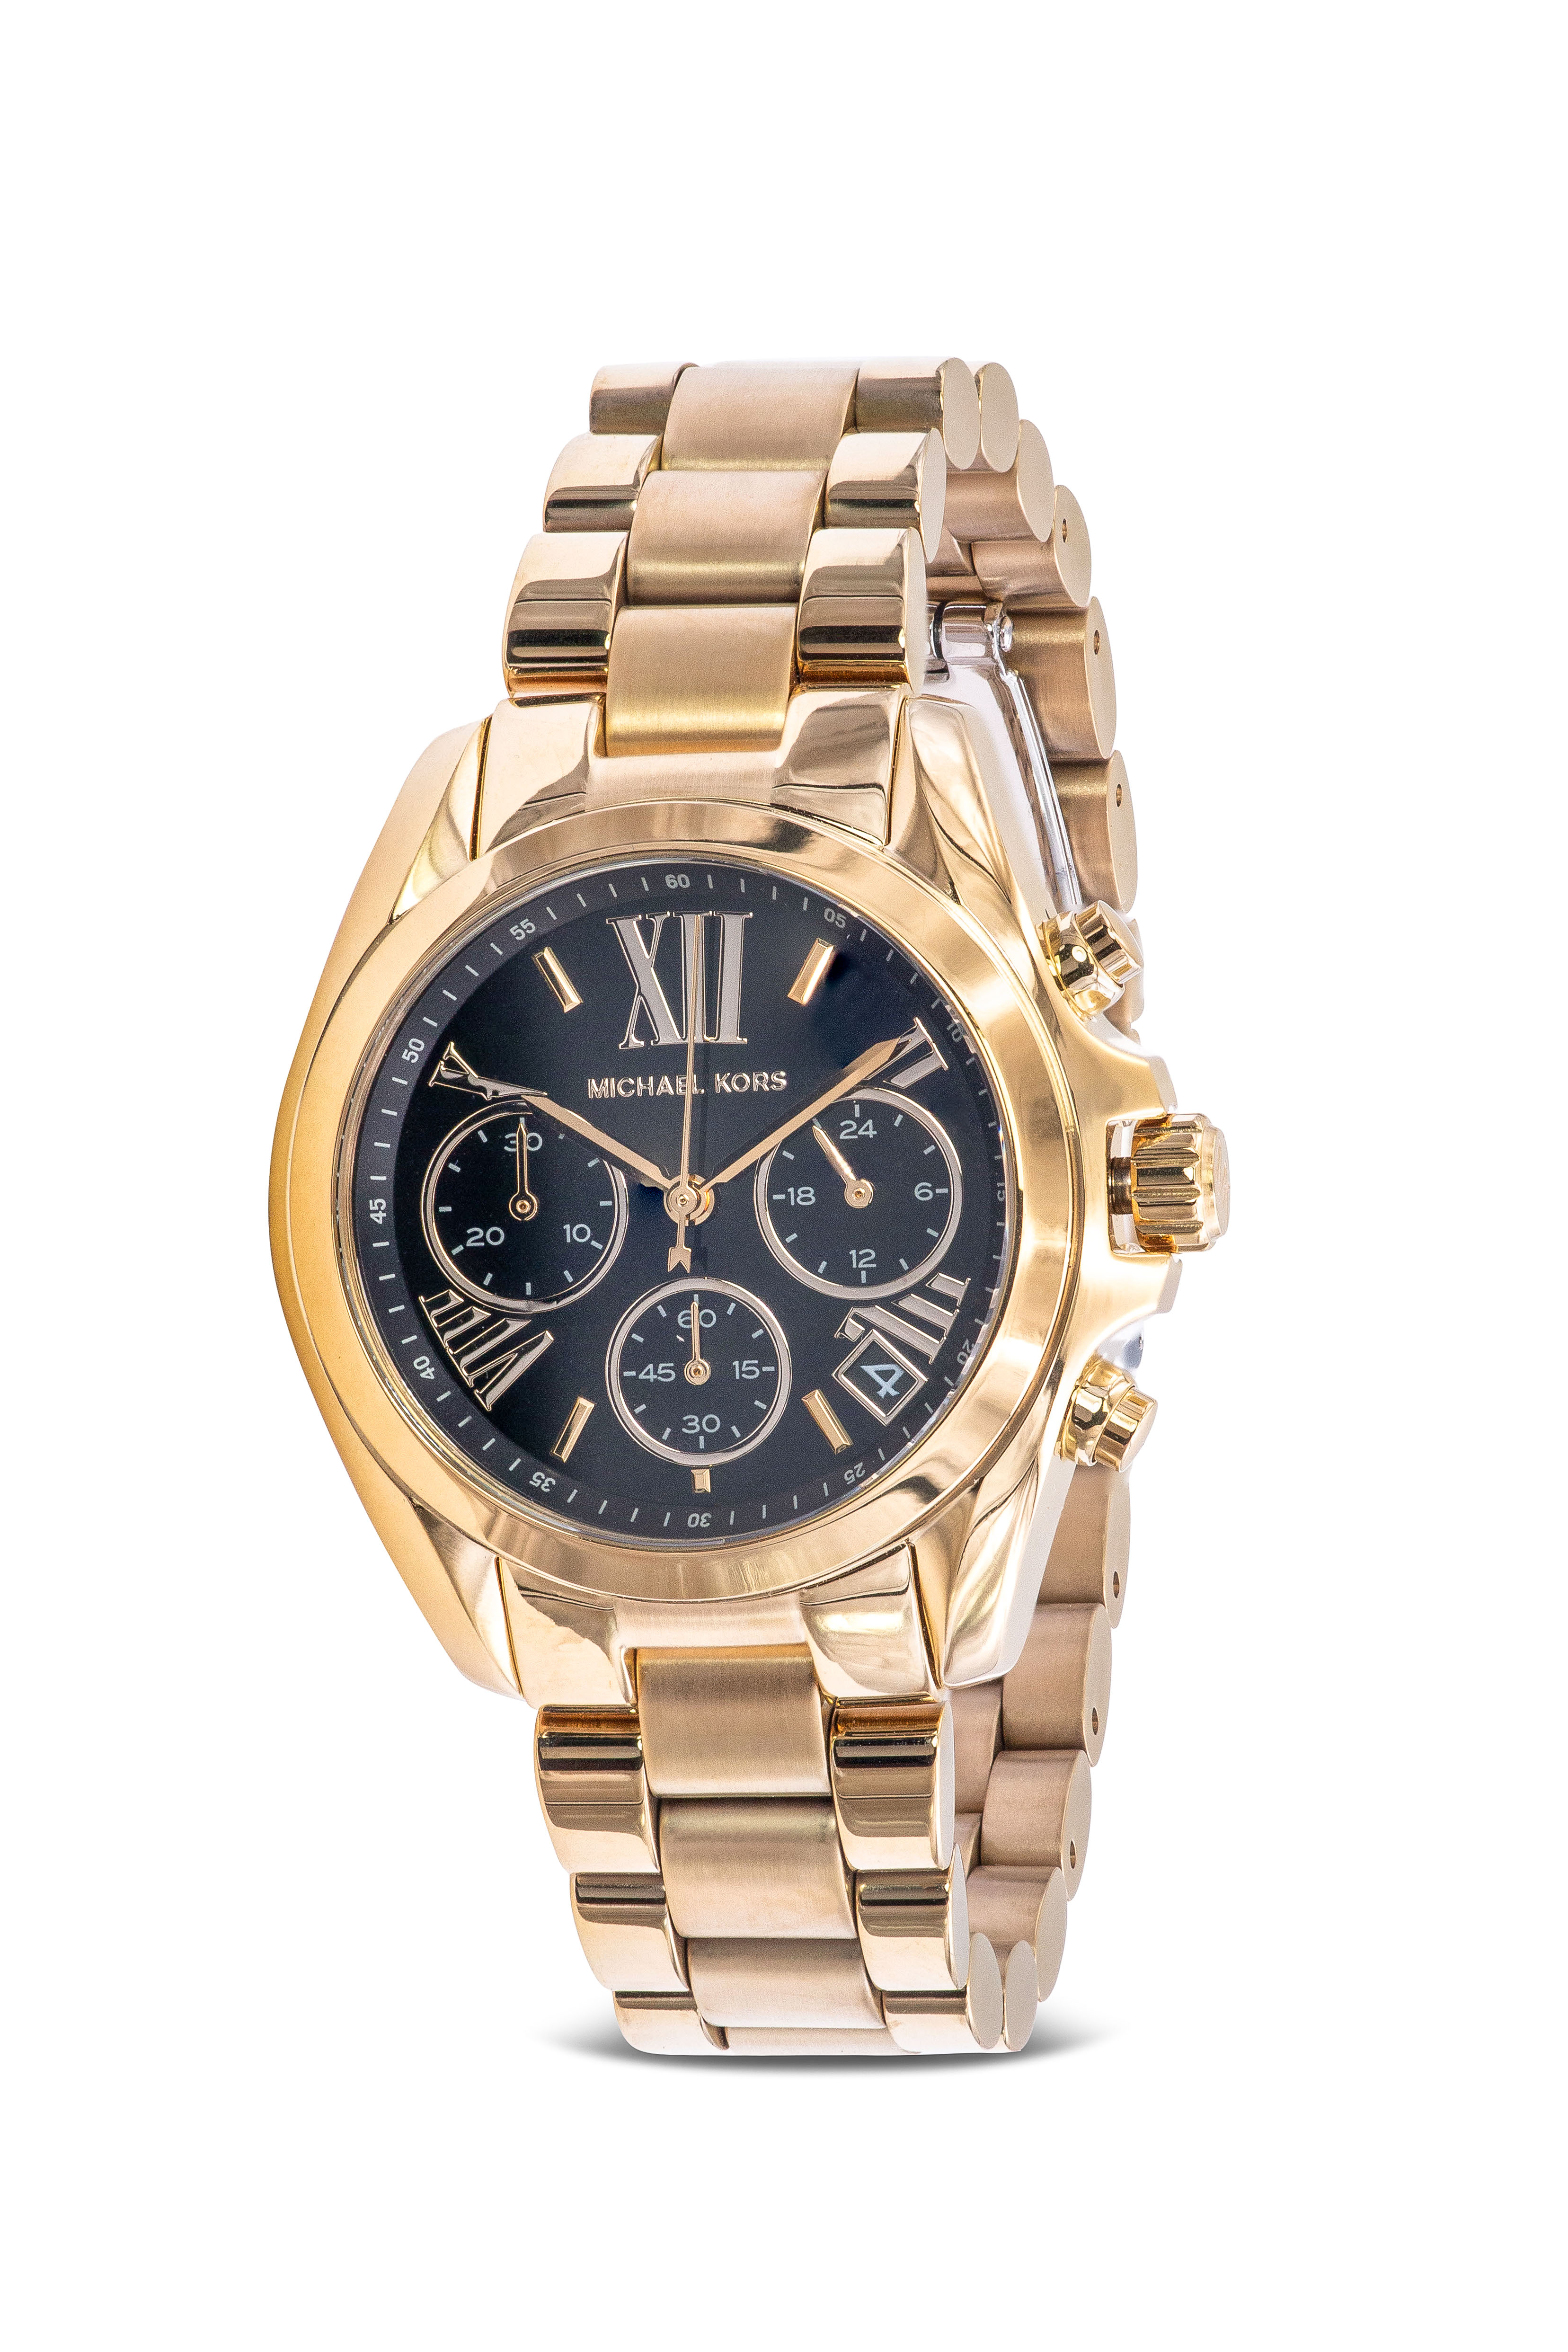 Michael Kors Bradshaw Chronograph Gold-Tone Watch MK6959 - Time Inc